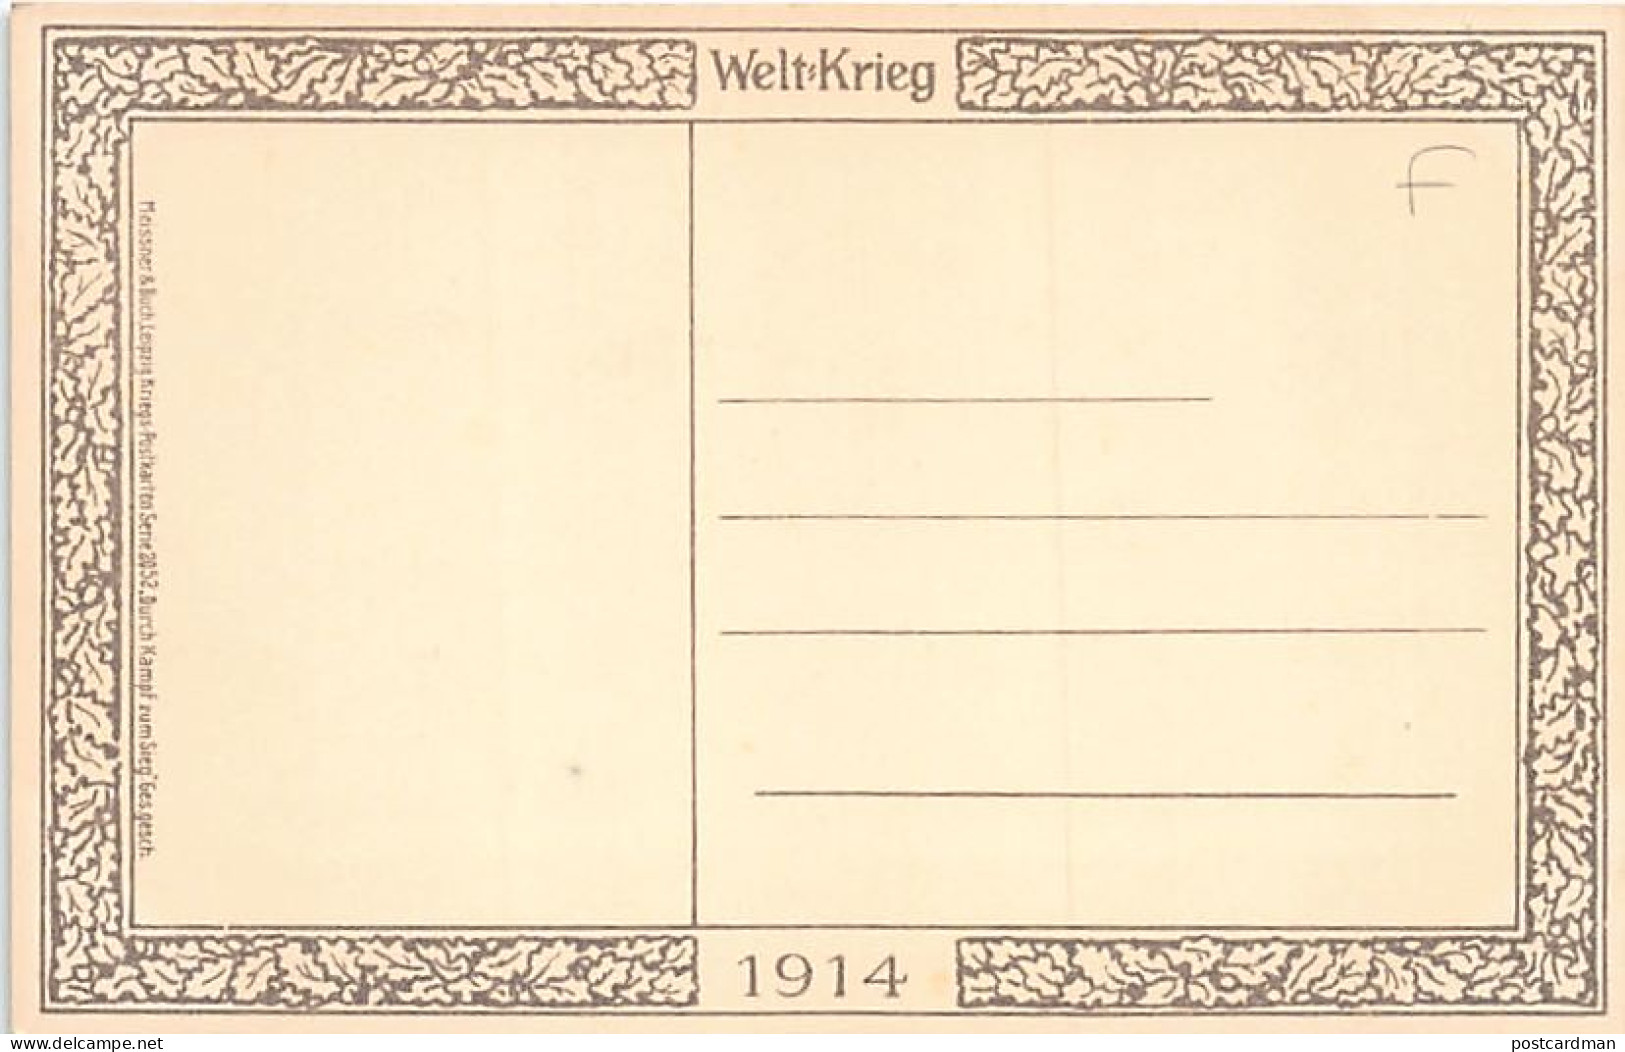 Österreich - Wien - Kaiser Wilhelm II - Kaiser Franz Joseph - Fest Und Getreu -Weltkrieg -1914 - Verlag Meissner Und Buc - Wien Mitte